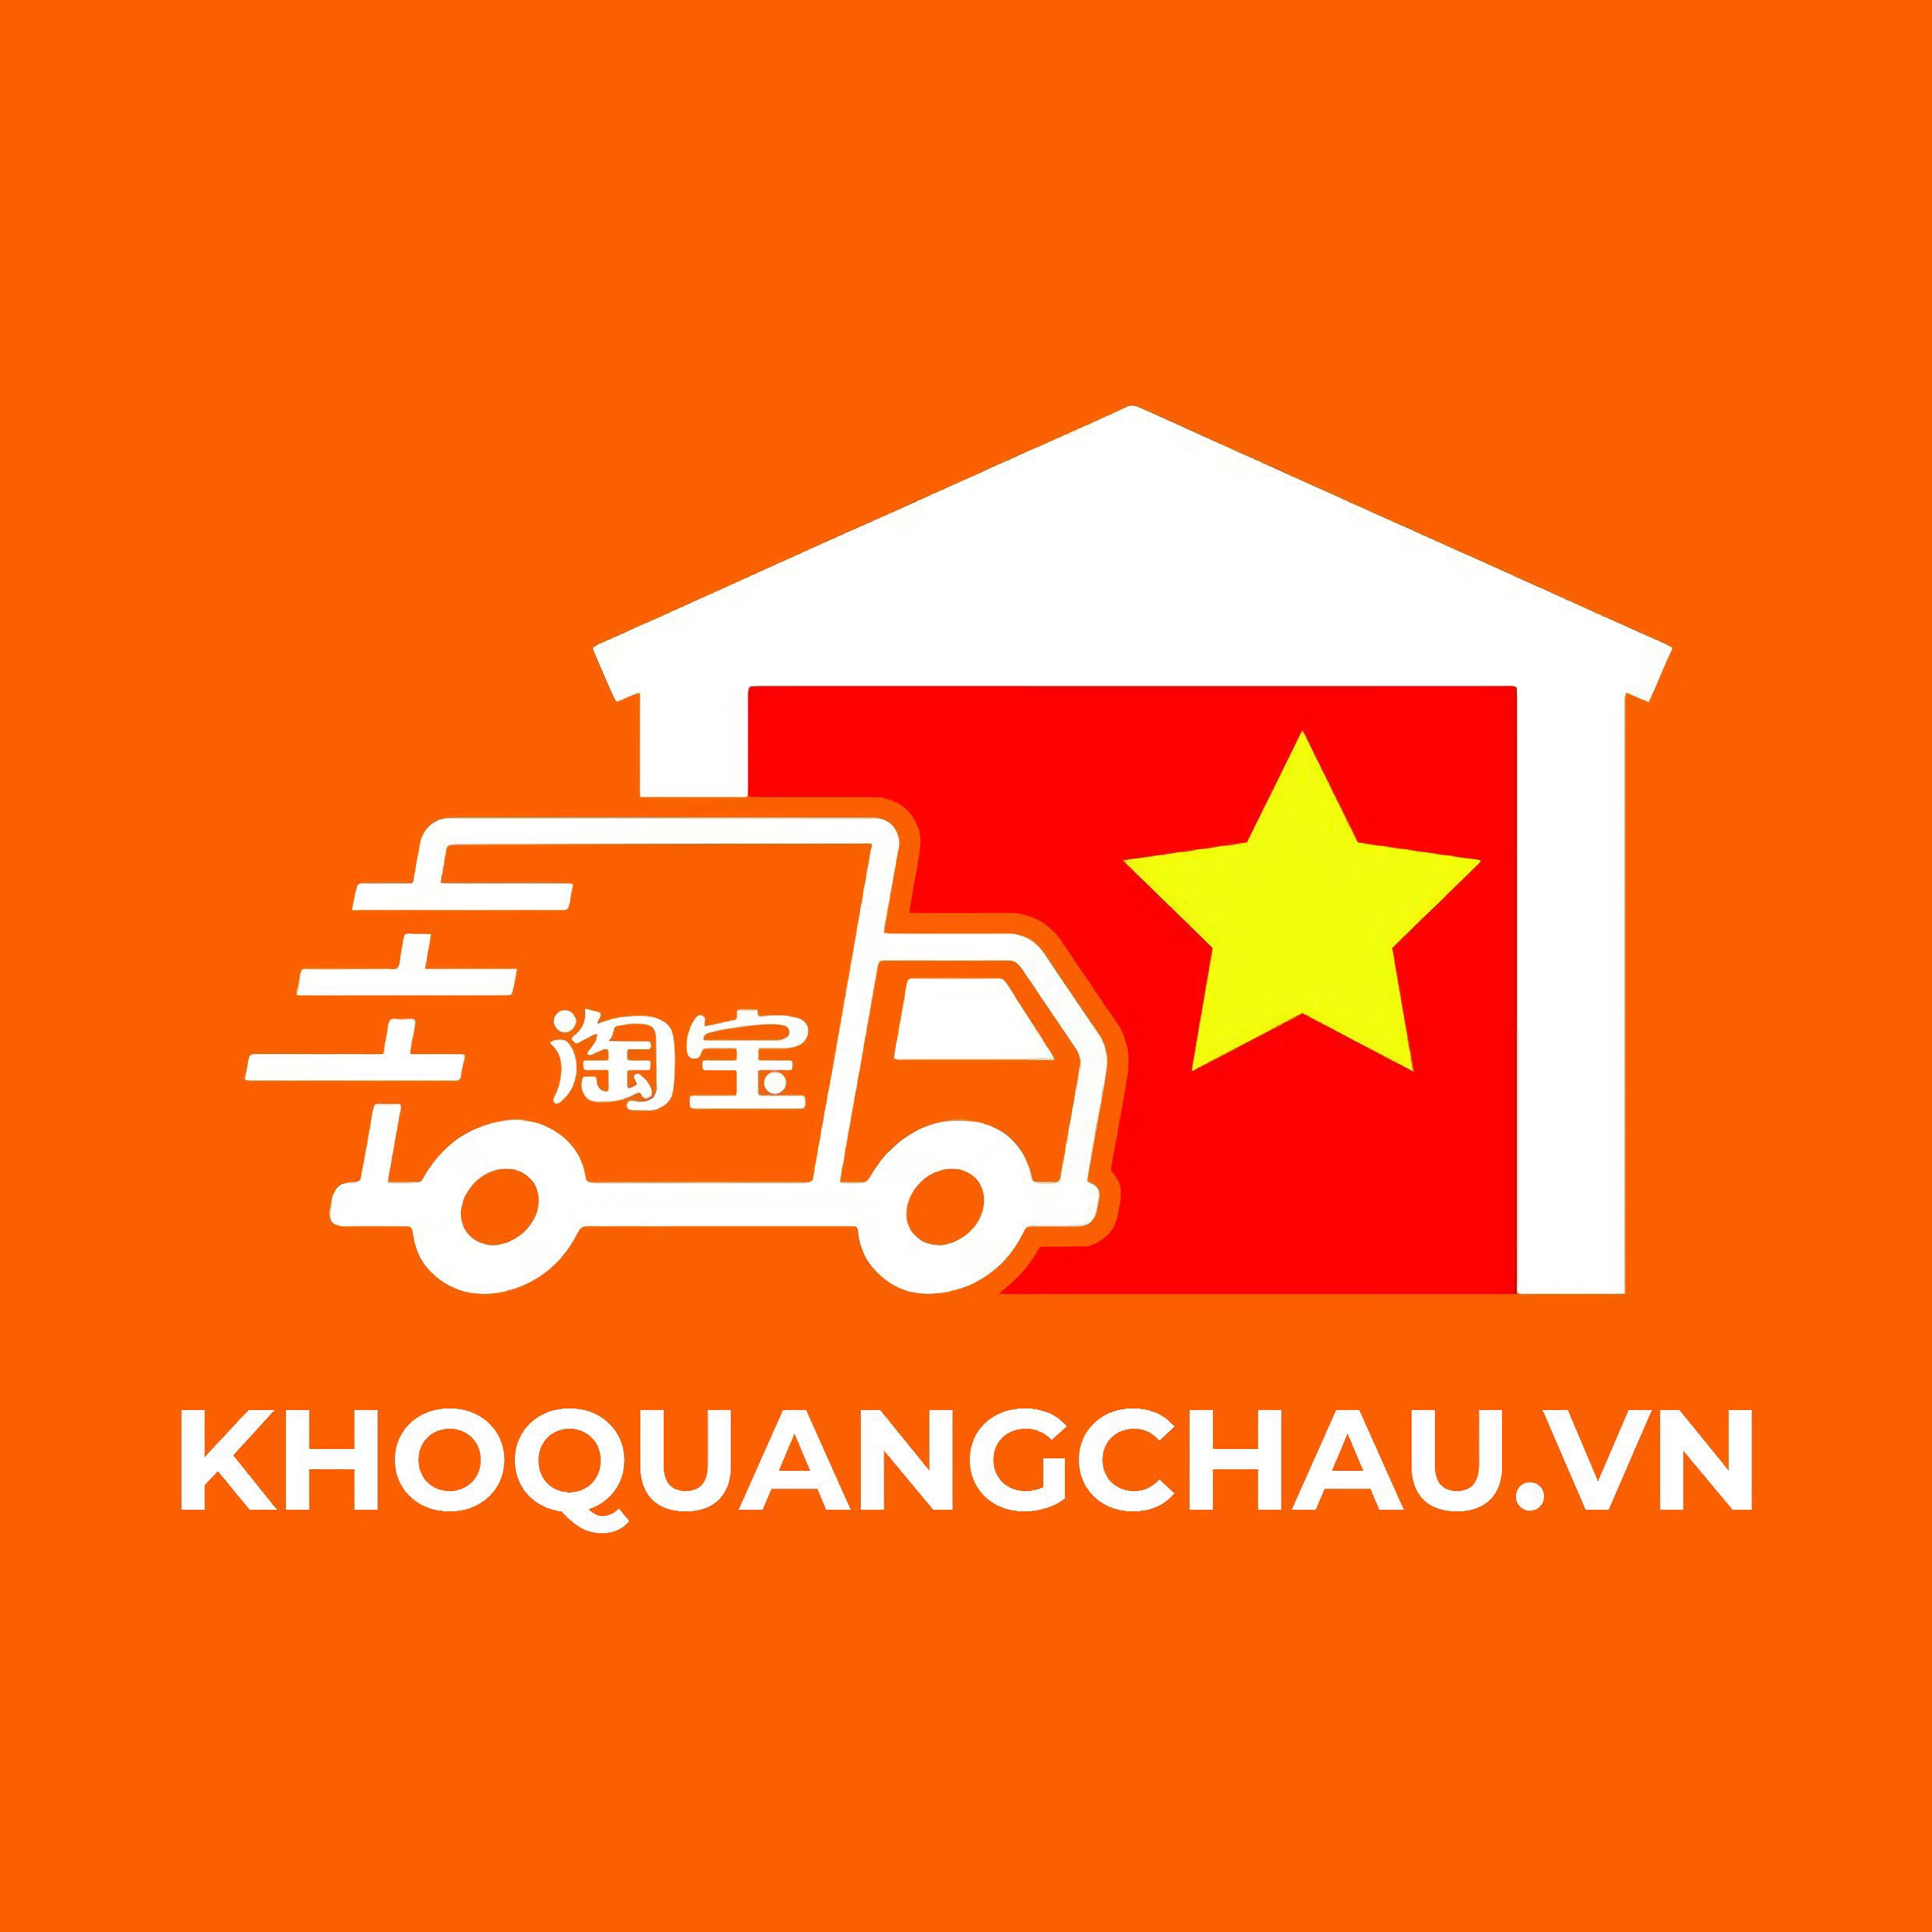 Cung cấp dịch vụ vận chuyển Trung Việt, Nguồn hàng tận gốc, Thanh toán hộ, Chuyển khoản, Đặt hàng Trung Quốc